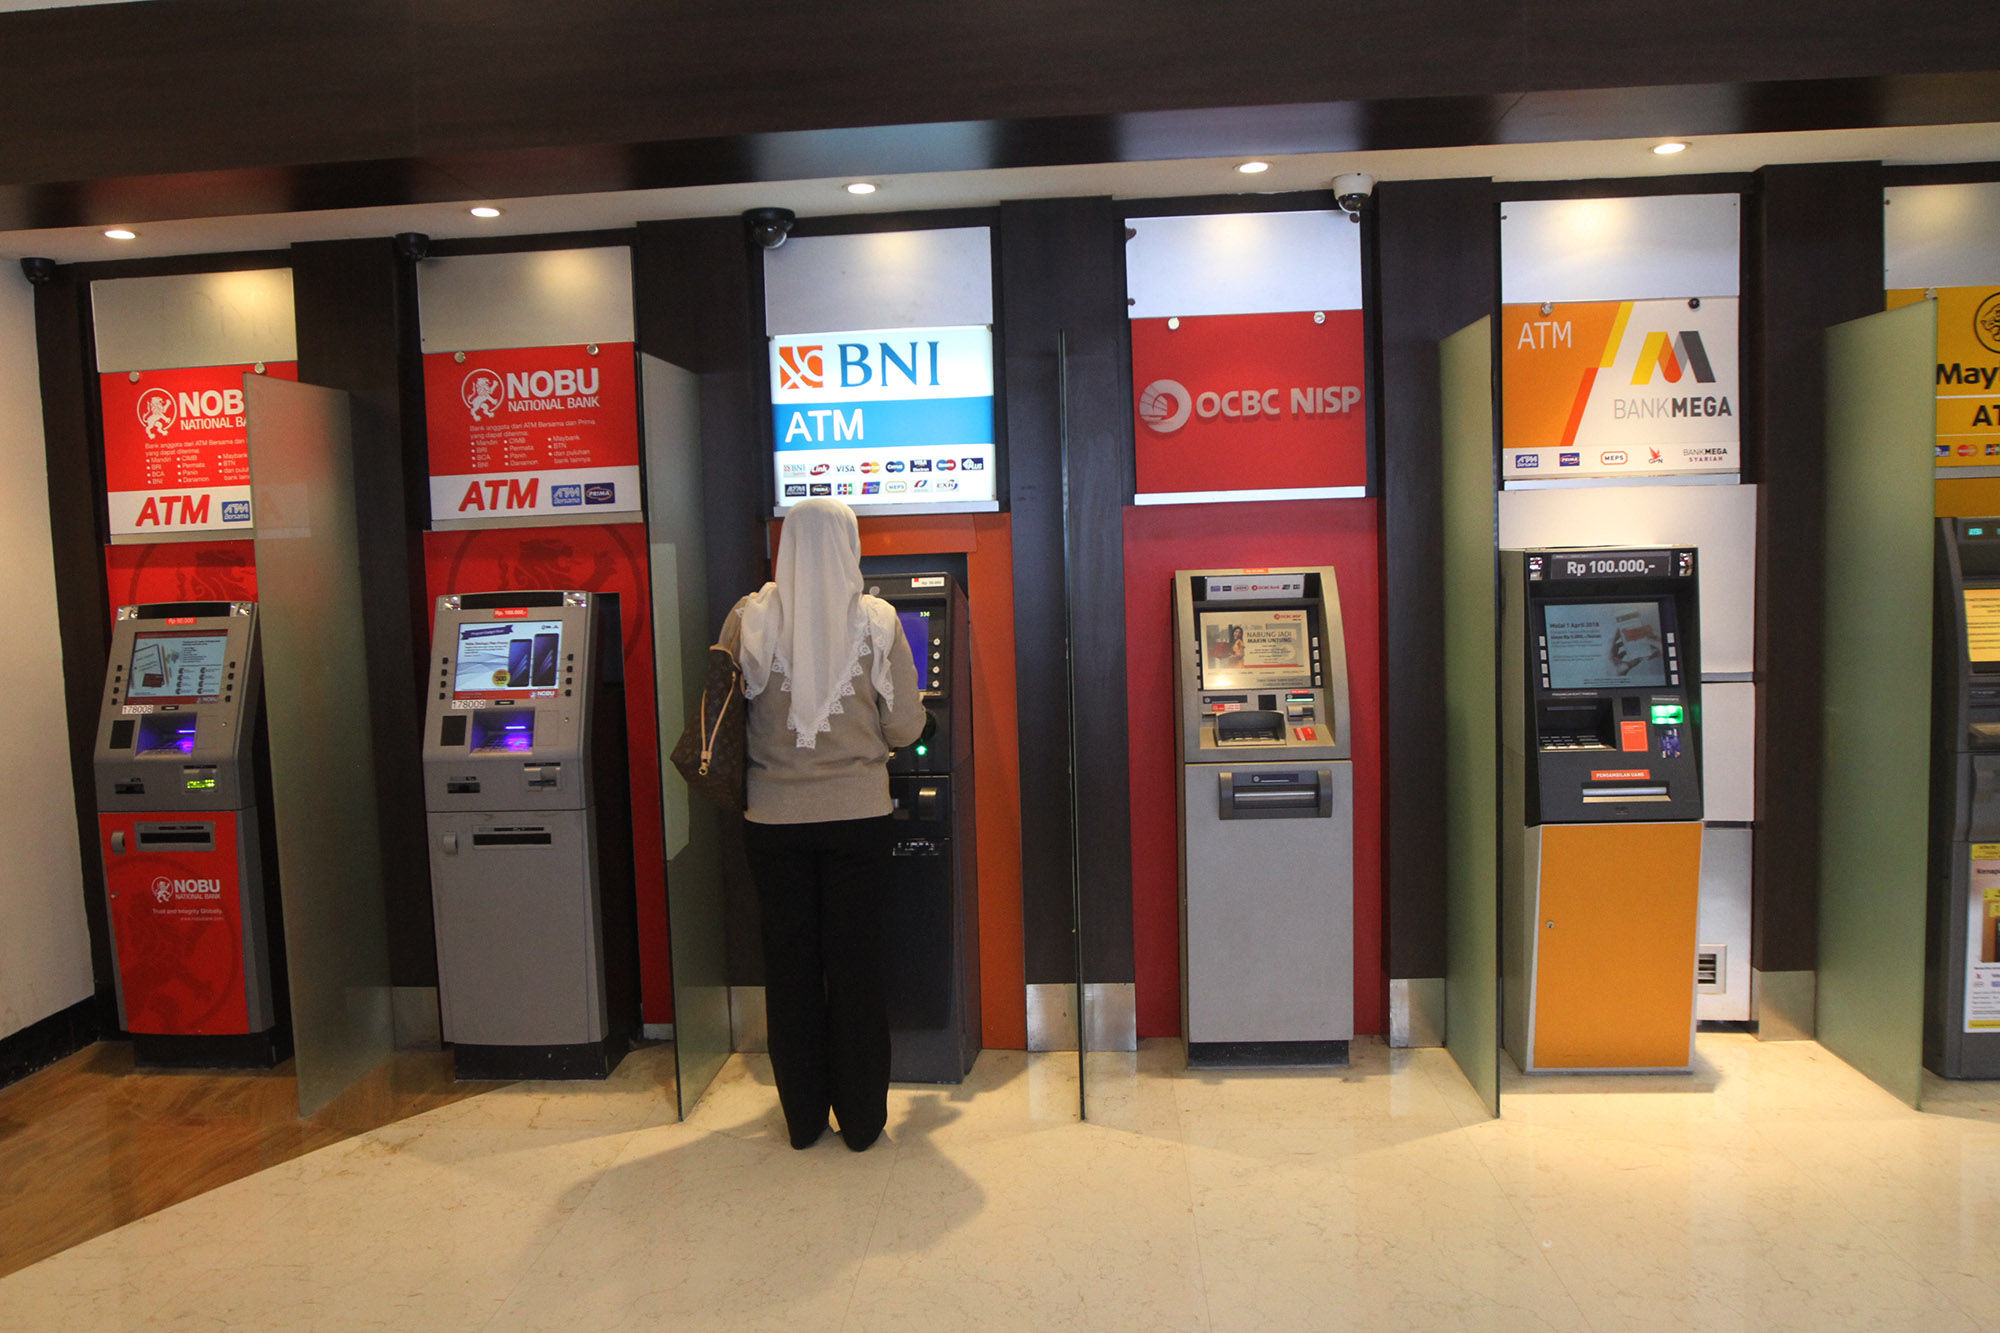 <p>Warga menggunakan fasilitas anjungan tunai mandiri (ATM) di salah satu pusat perbelanjaan di Jakarta. foto: Ismail Pohan/TrenAsia</p>
